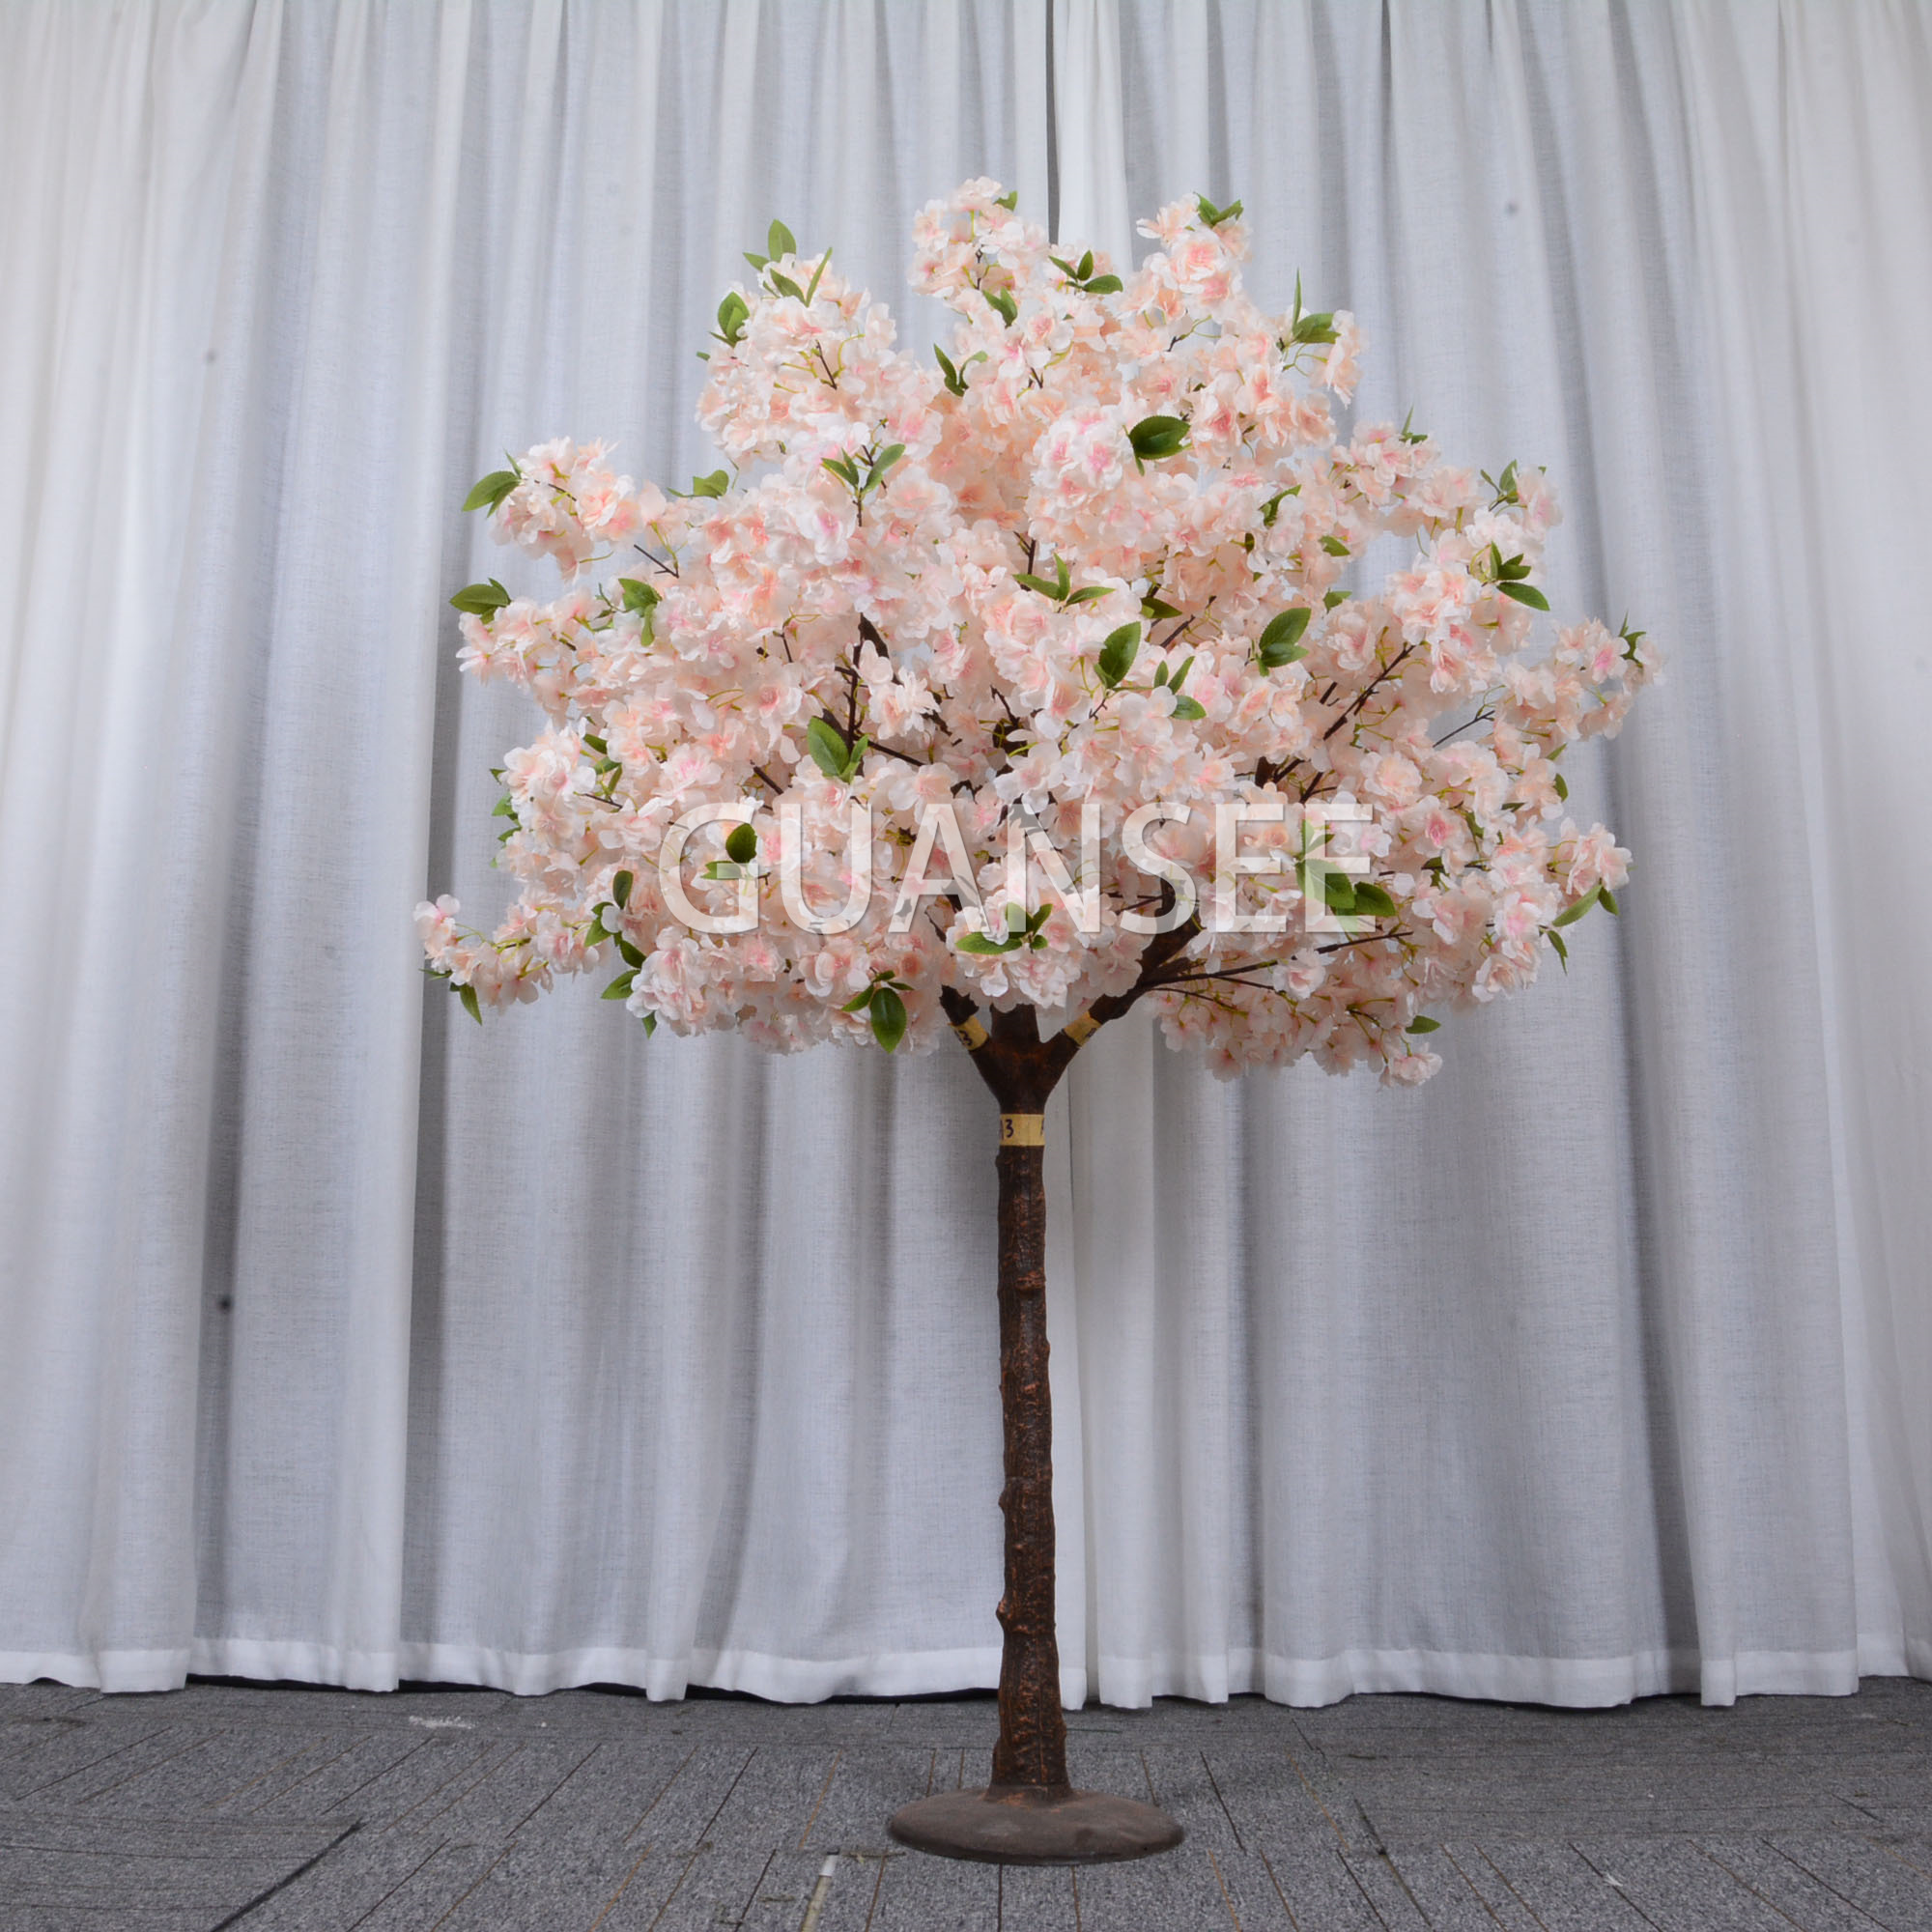  5 футів шампанського, центральне місце для весільного столу, штучне вишневе дерево 